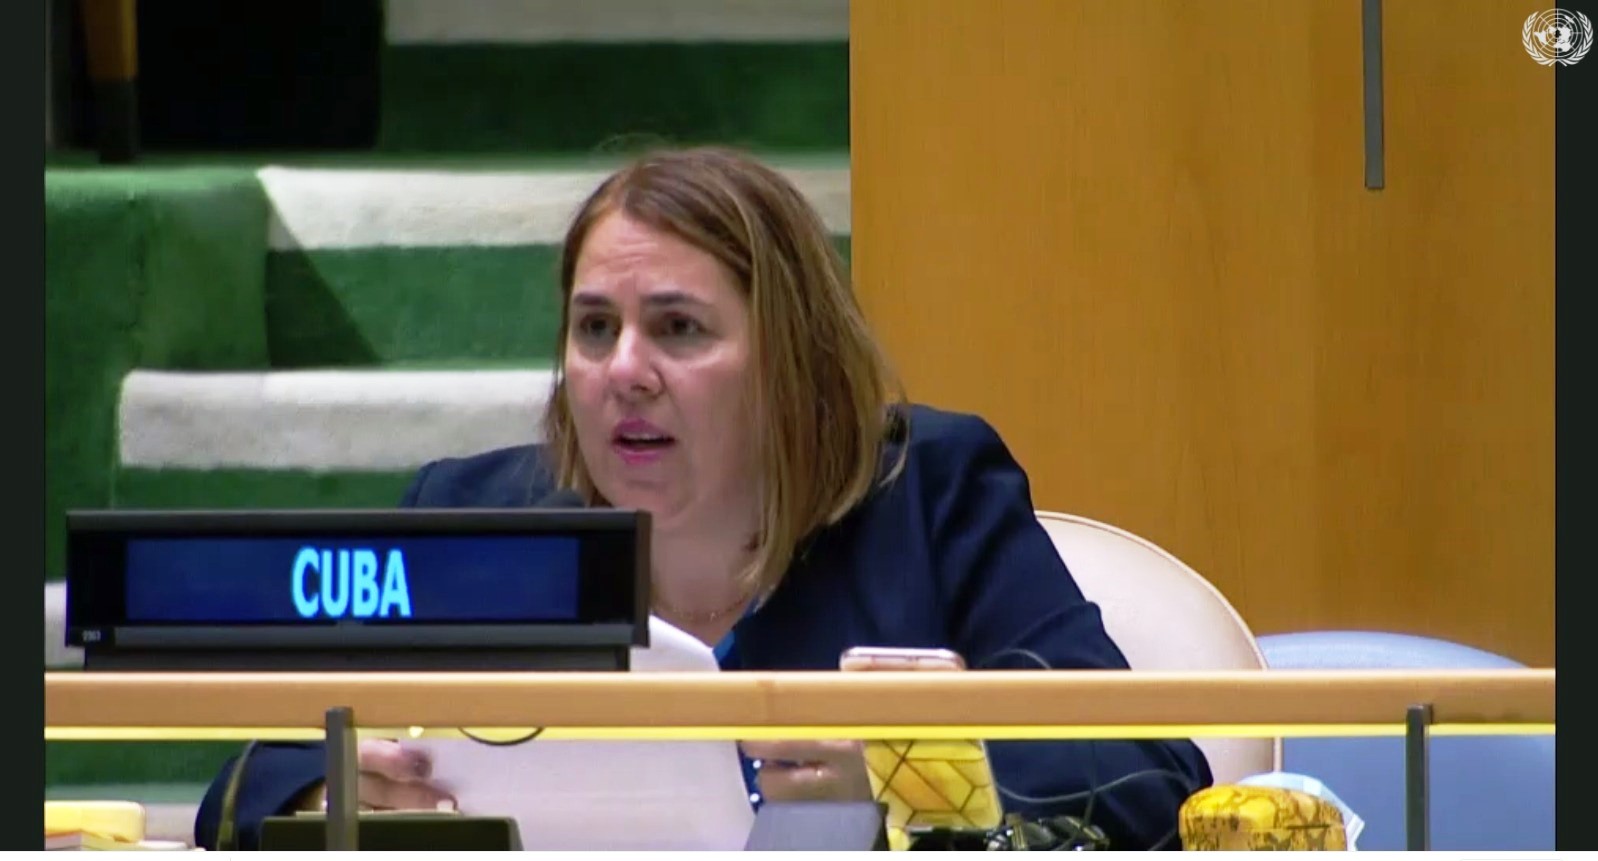 Por su parte, Cuba presentó, en nombre de un conjunto de 20 delegaciones, una enmienda que fortaleció aún más el mensaje que traslada esta resolución, al incorporar al texto el llamado al levantamiento de las medidas coercitivas unilaterales contrarias a la Carta de las Naciones Unidas y el Derecho Internacional.